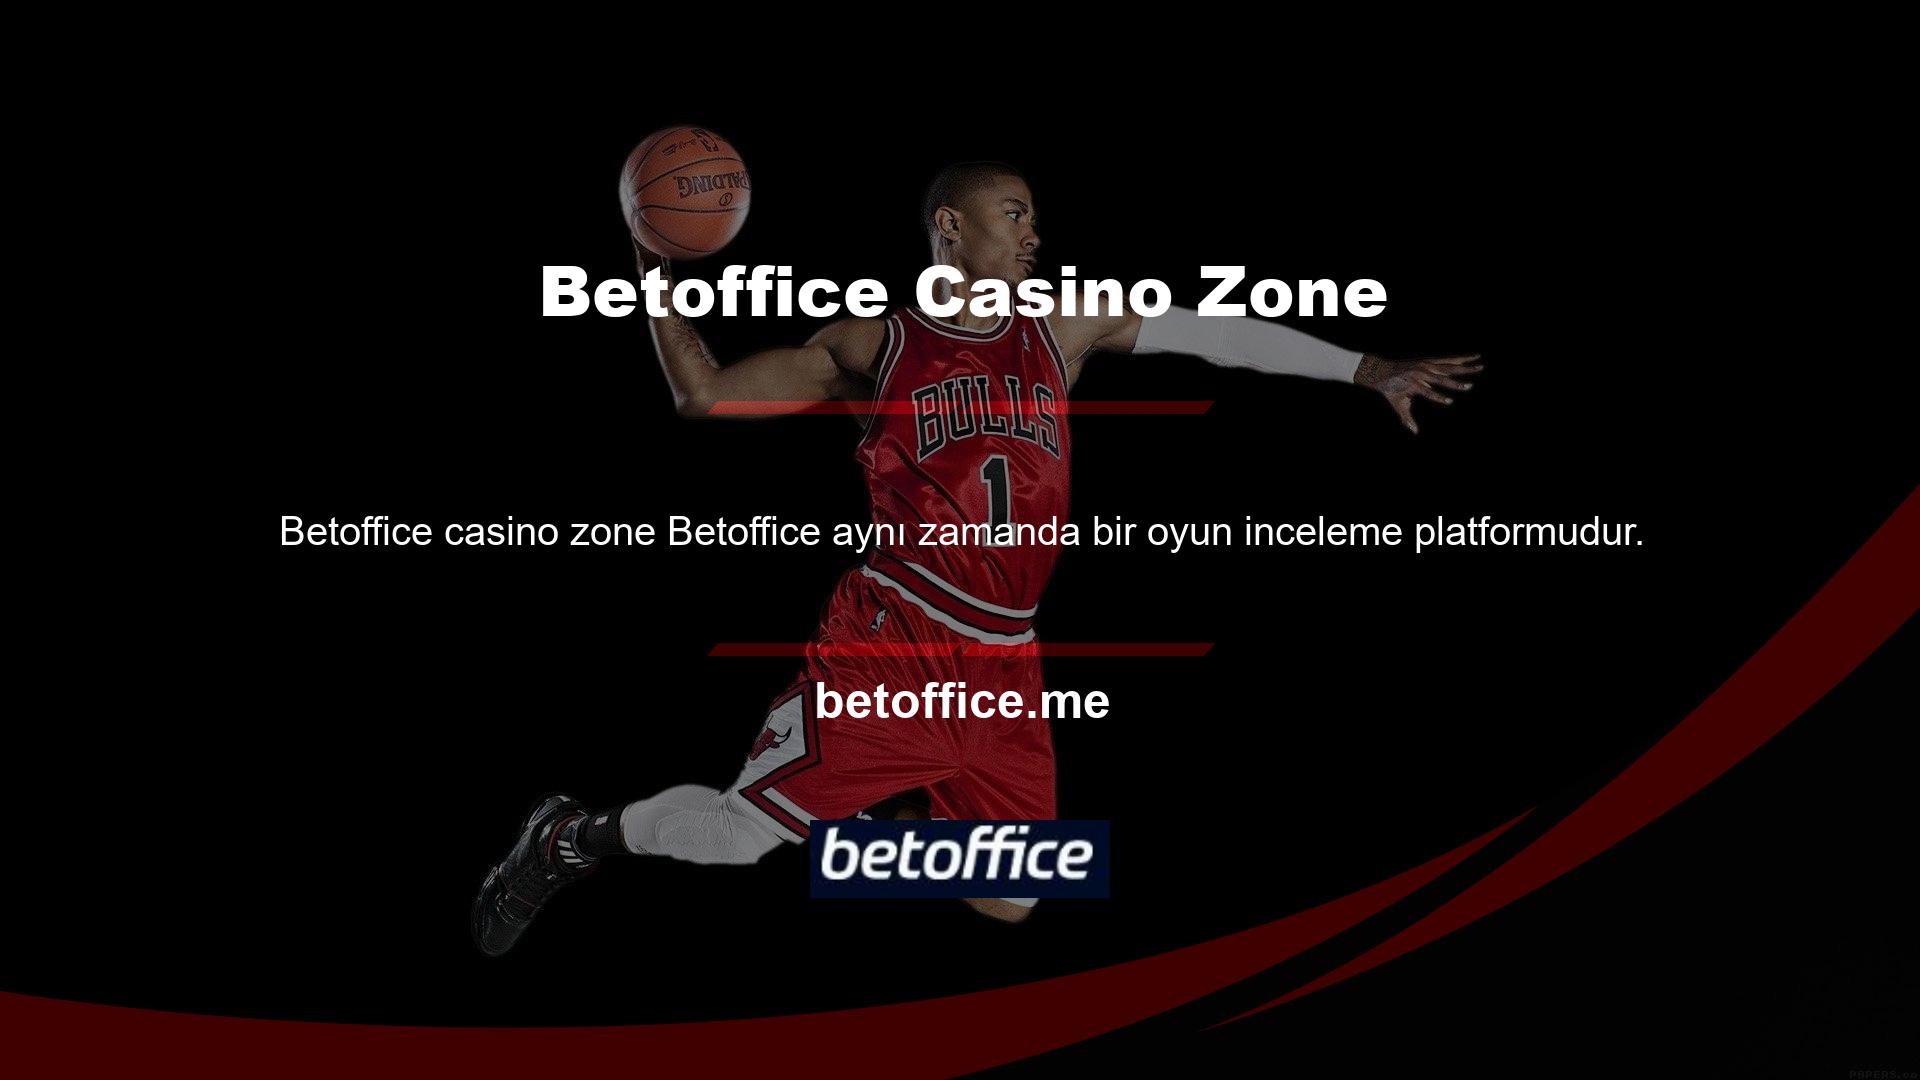 Casinonun sunduğu Betoffice Casino bölümü birkaç ana kategoriye ayrılmıştır